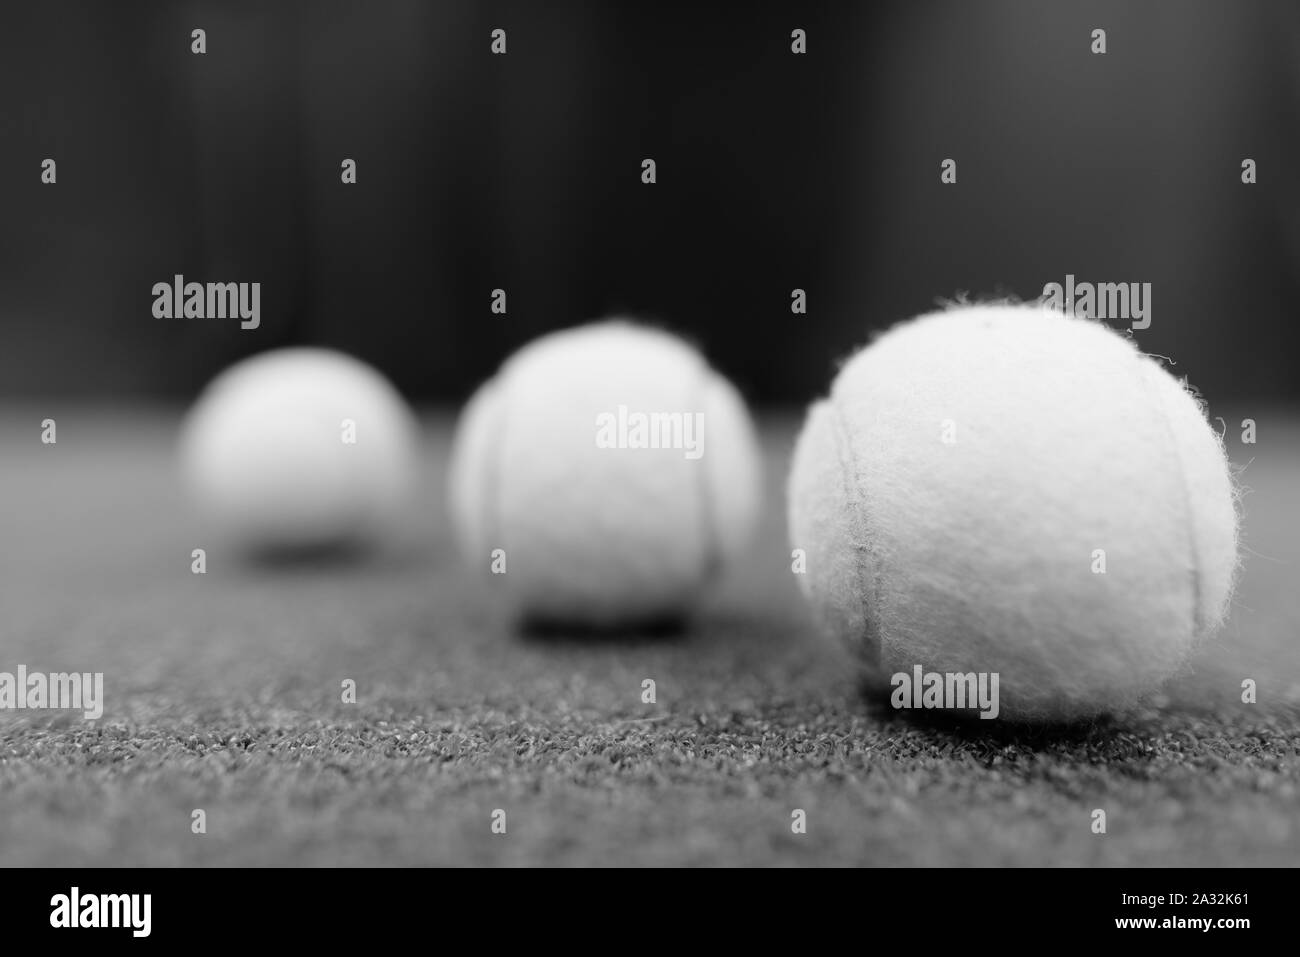 Les balles de tennis sur le sol tourné en noir et blanc Banque D'Images